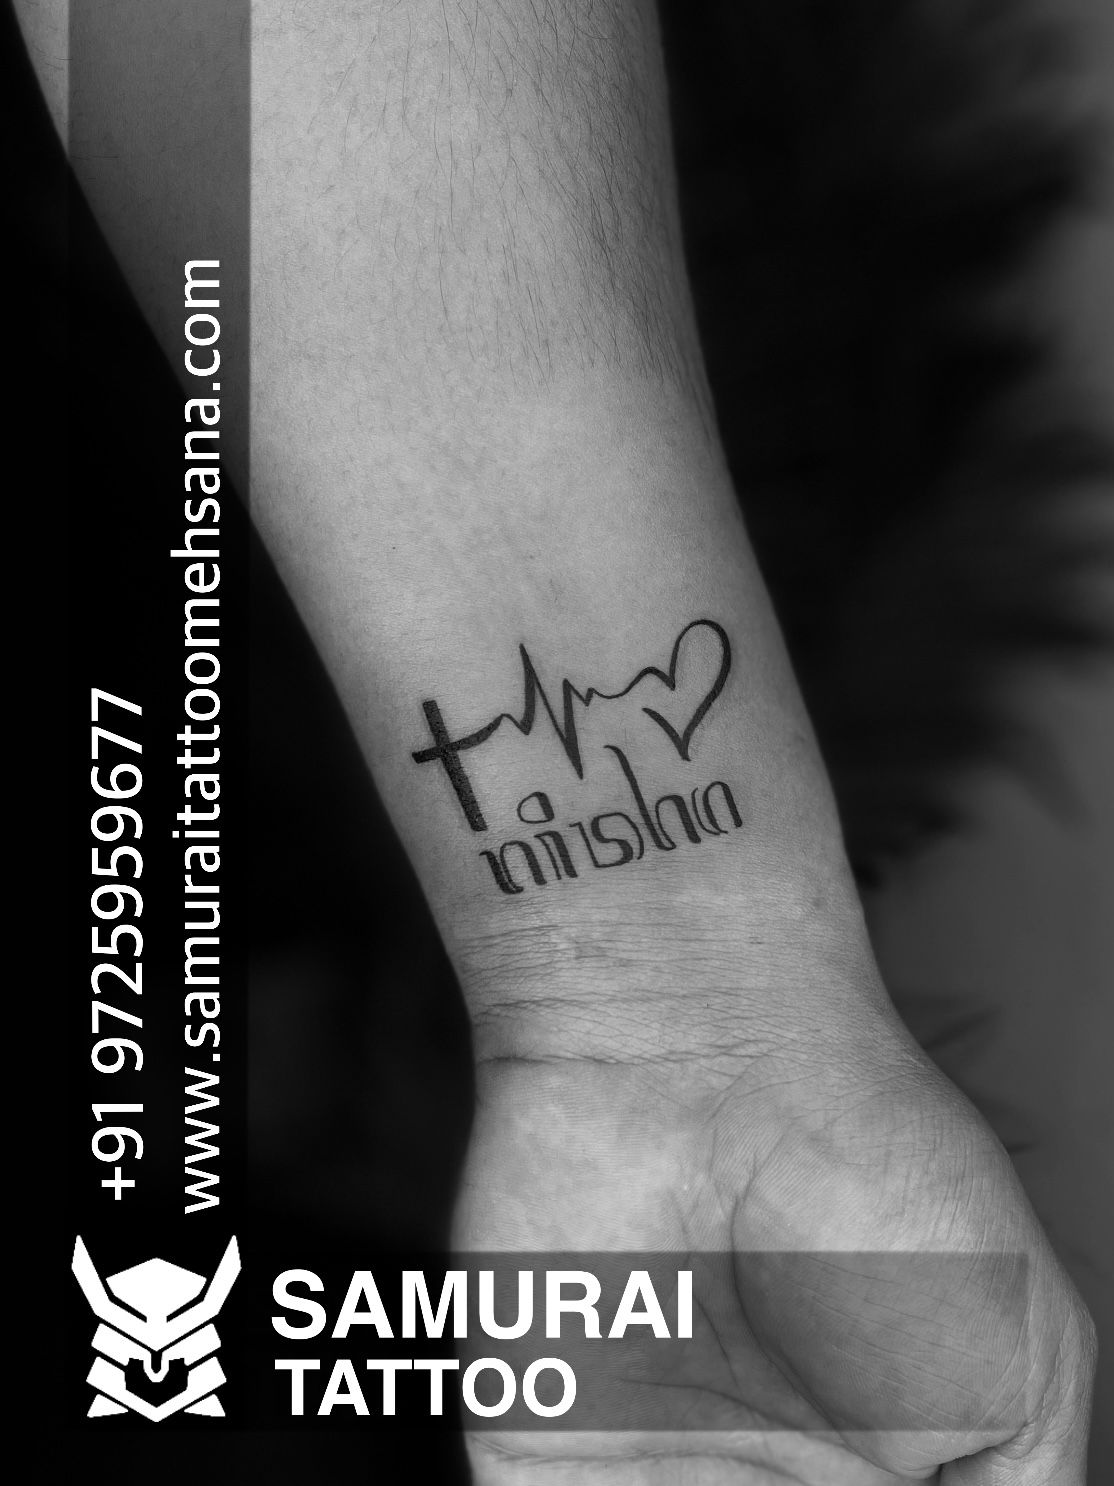 Tattoo uploaded by Vipul Chaudhary • Nishu name tattoo | Nishu tattoo |Nishu  name tattoo ideas | • Tattoodo